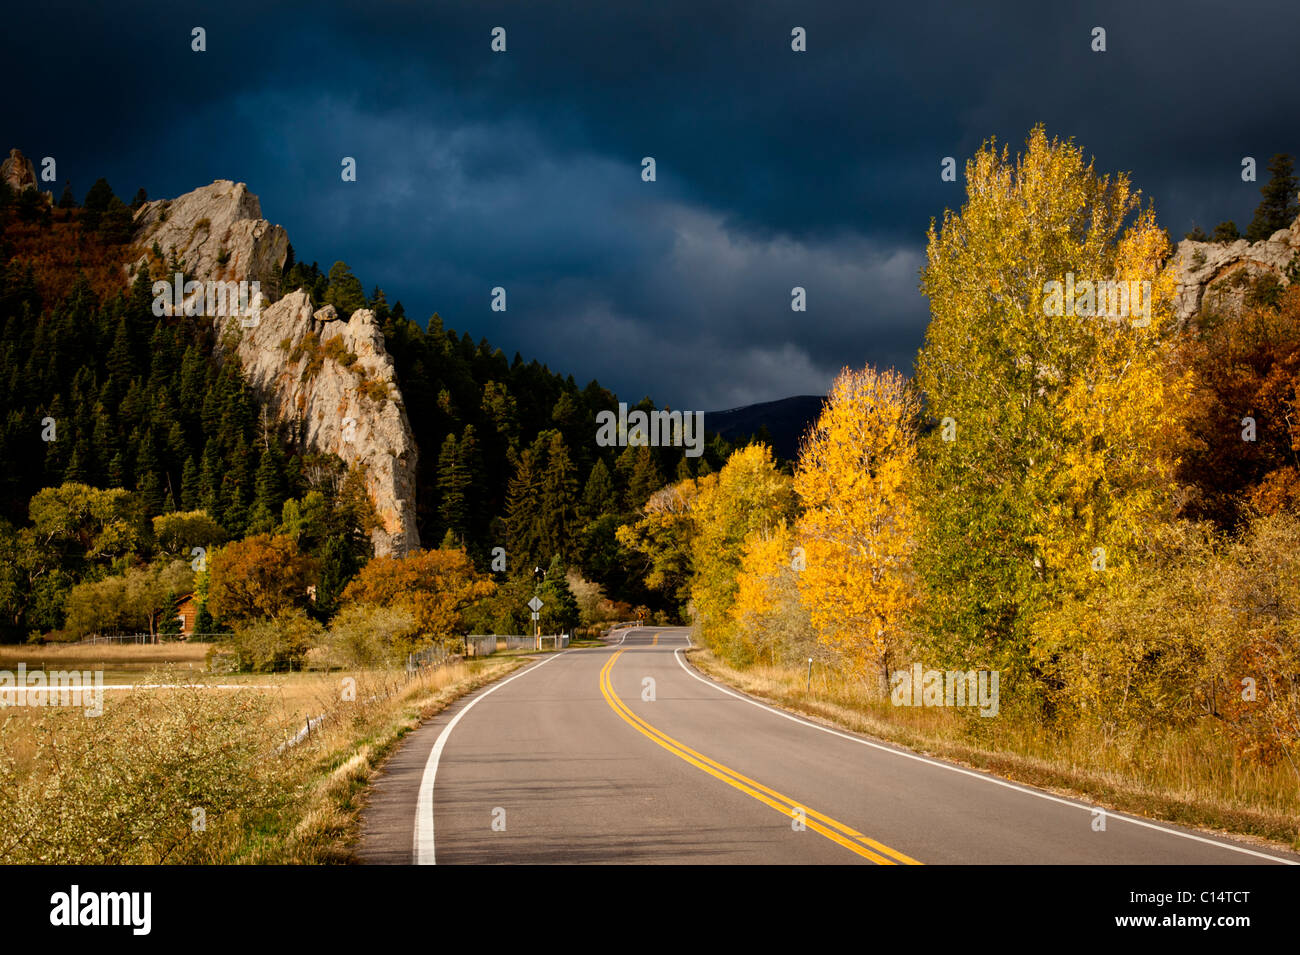 Autobahn mit Bäumen in Herbstfarben und stürmischen Himmel.  Walsenburg, Colorado. Stockfoto